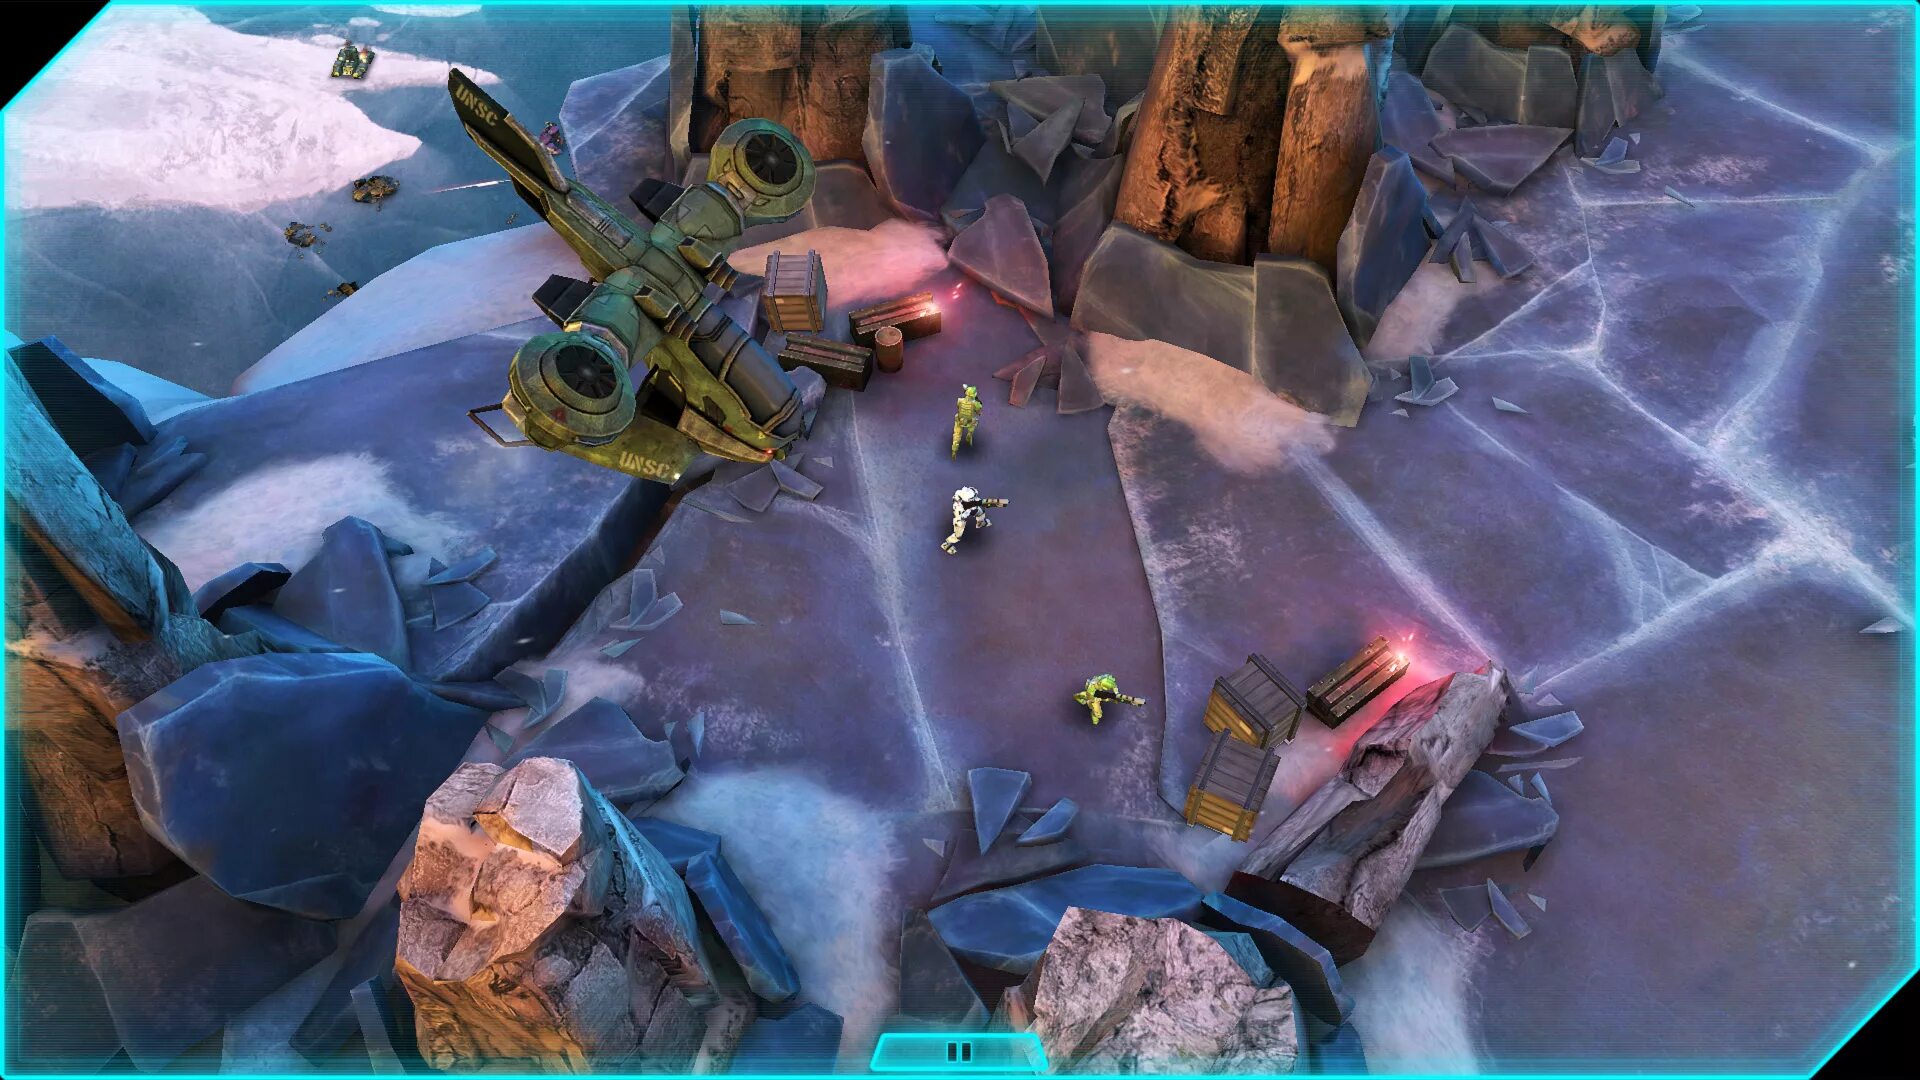 Halo spartan assault. Игра Halo: Spartan Assault. Halo Spartan Assault (2014) игра. Halo Spartan Assault Xbox 360. Halo: Spartan Assault (2013).